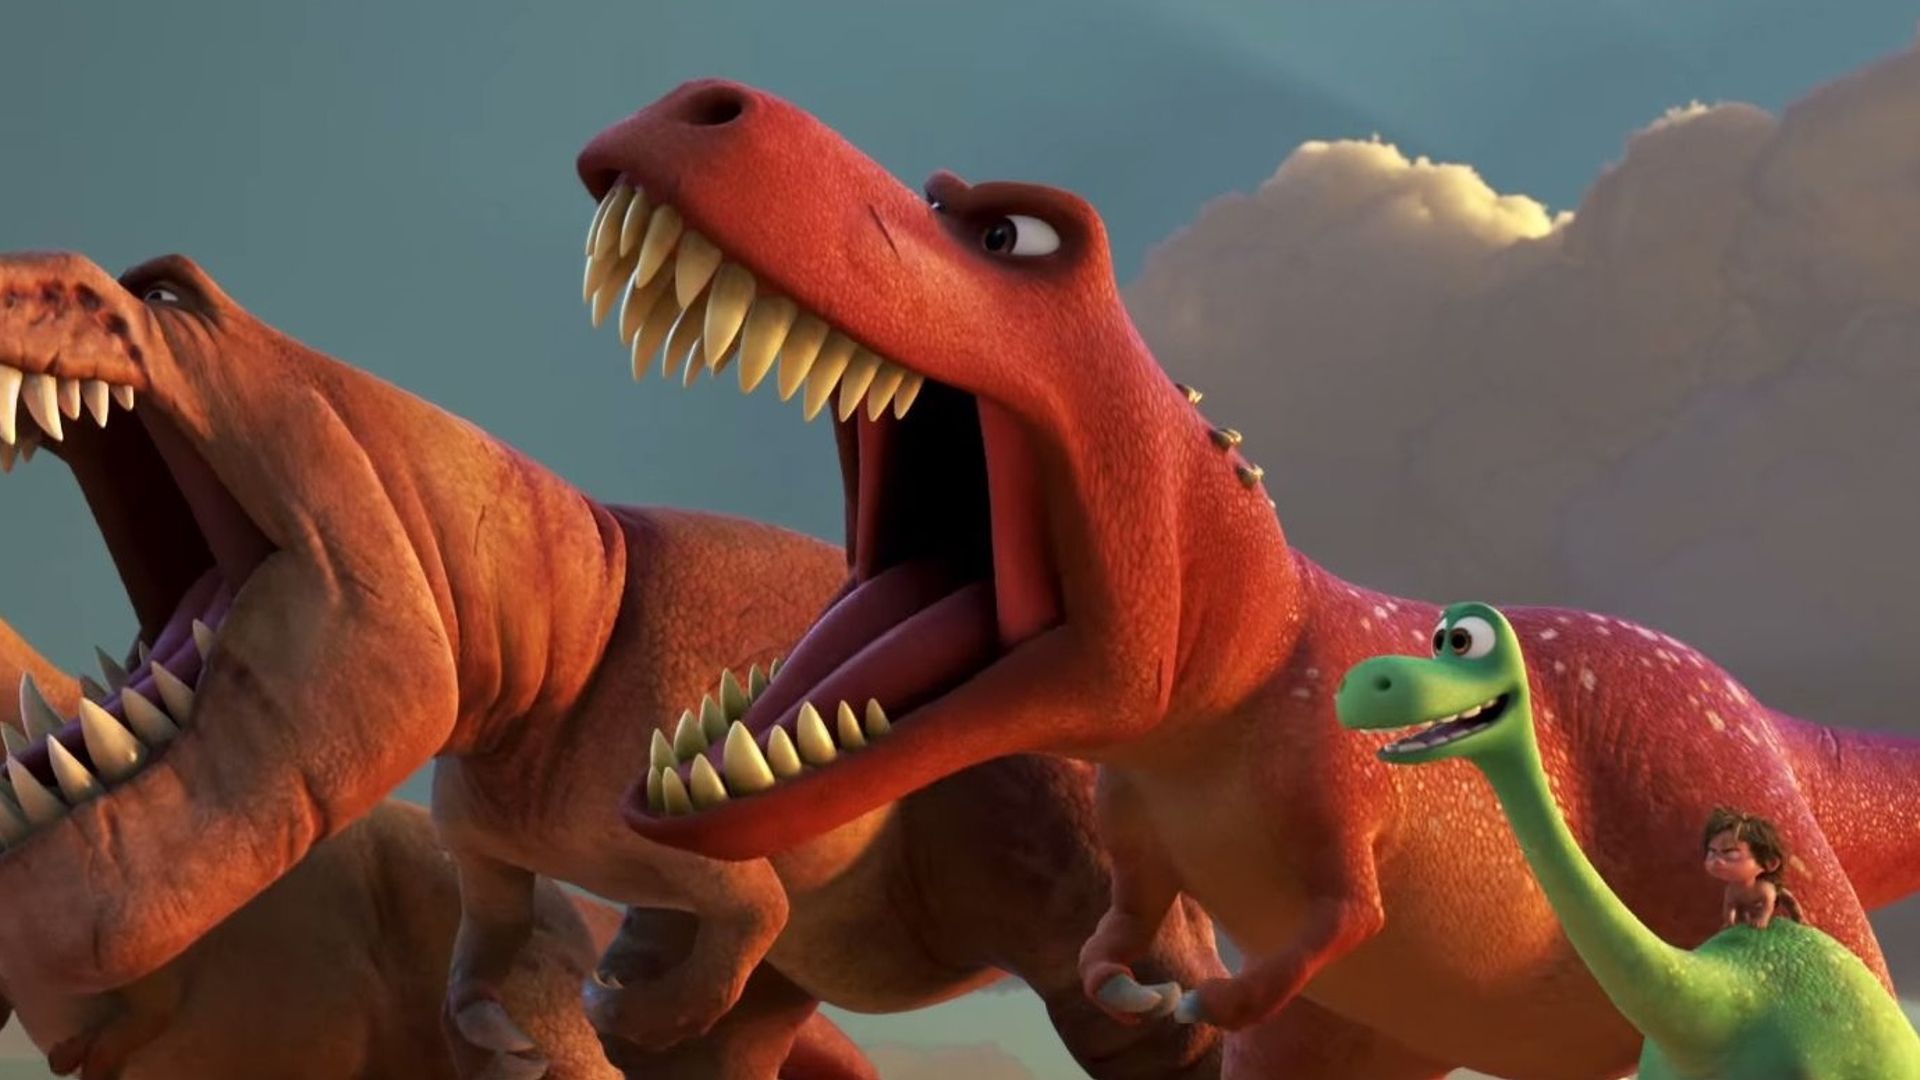 La bande annonce pour le prochain Pixar est étourdissante, impressionnante, euphorisante...